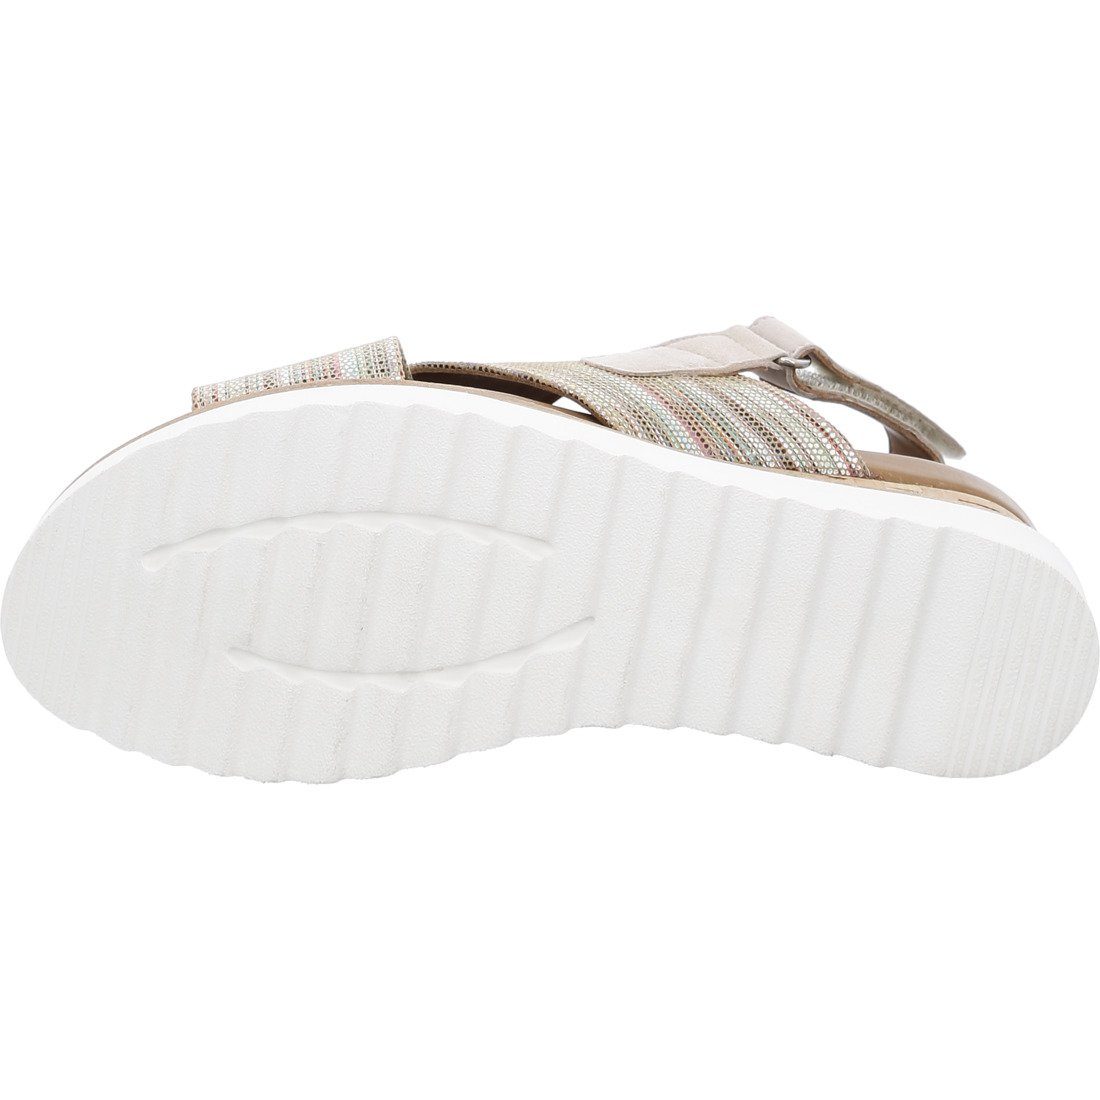 Valencia Sandalette 045301 Ara sonstige Schuhe, Leder Ara Sandalette - Damen